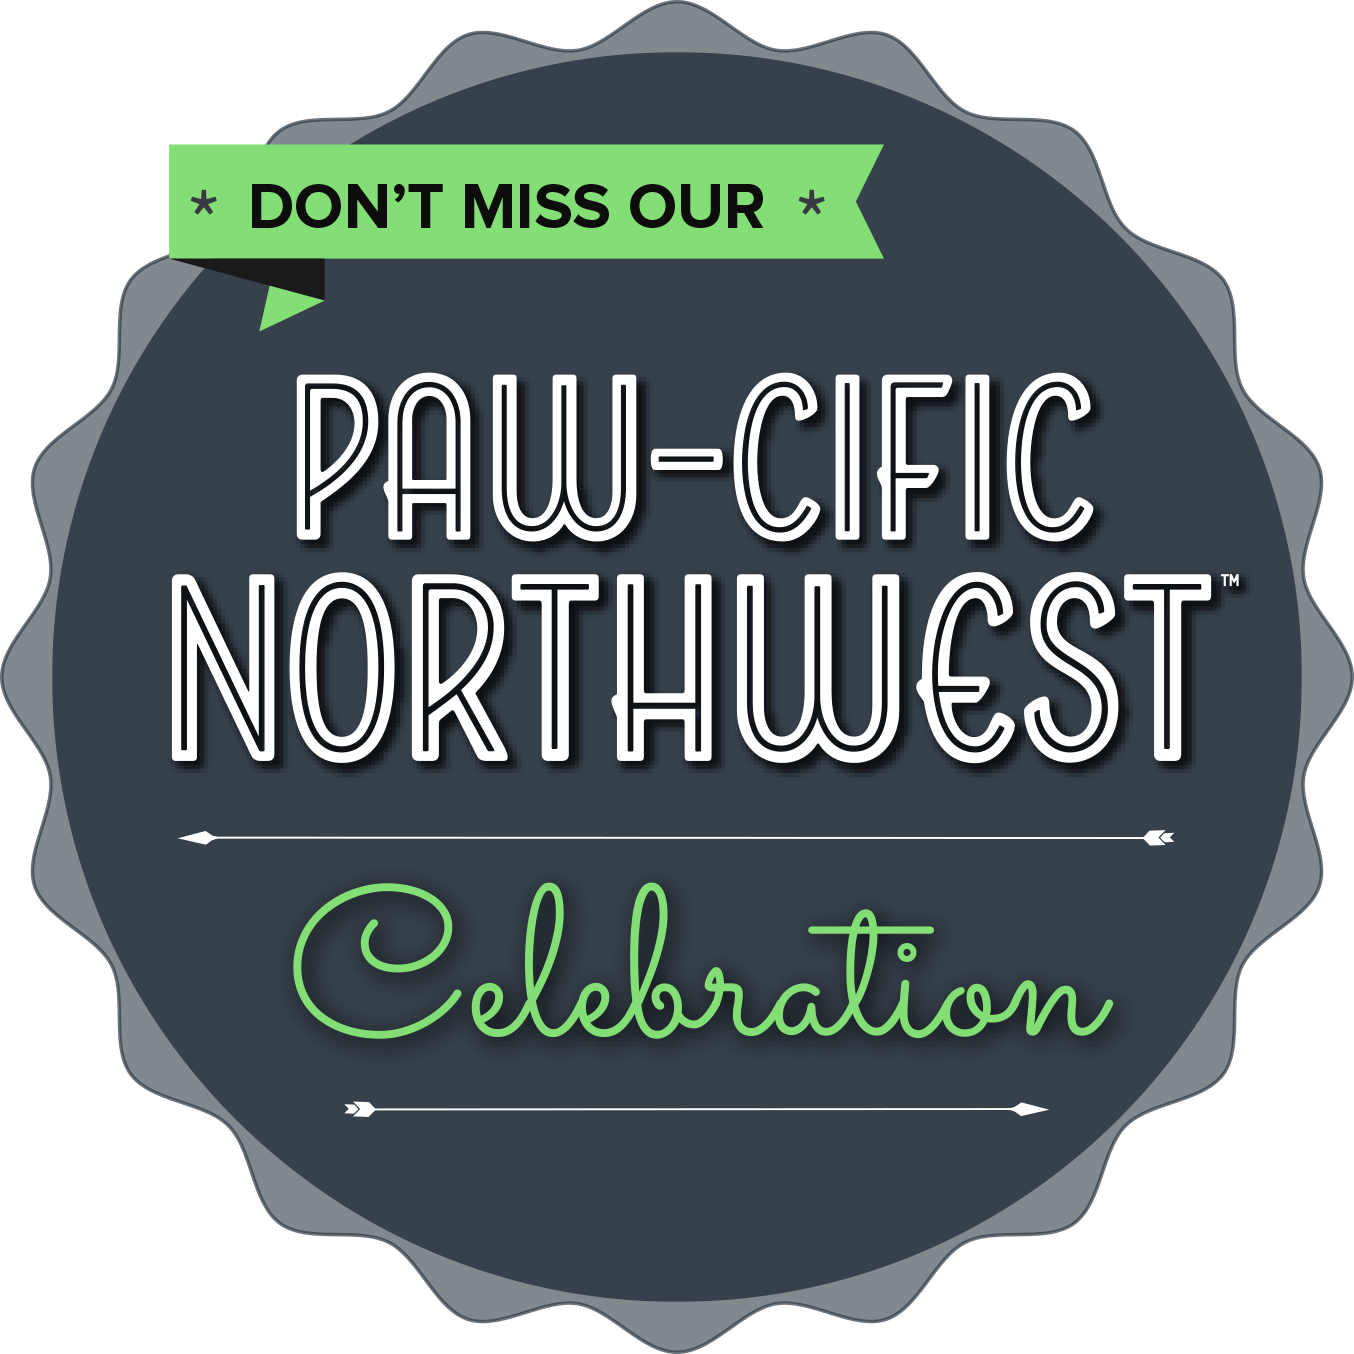 Pawcific Northwest Celebration